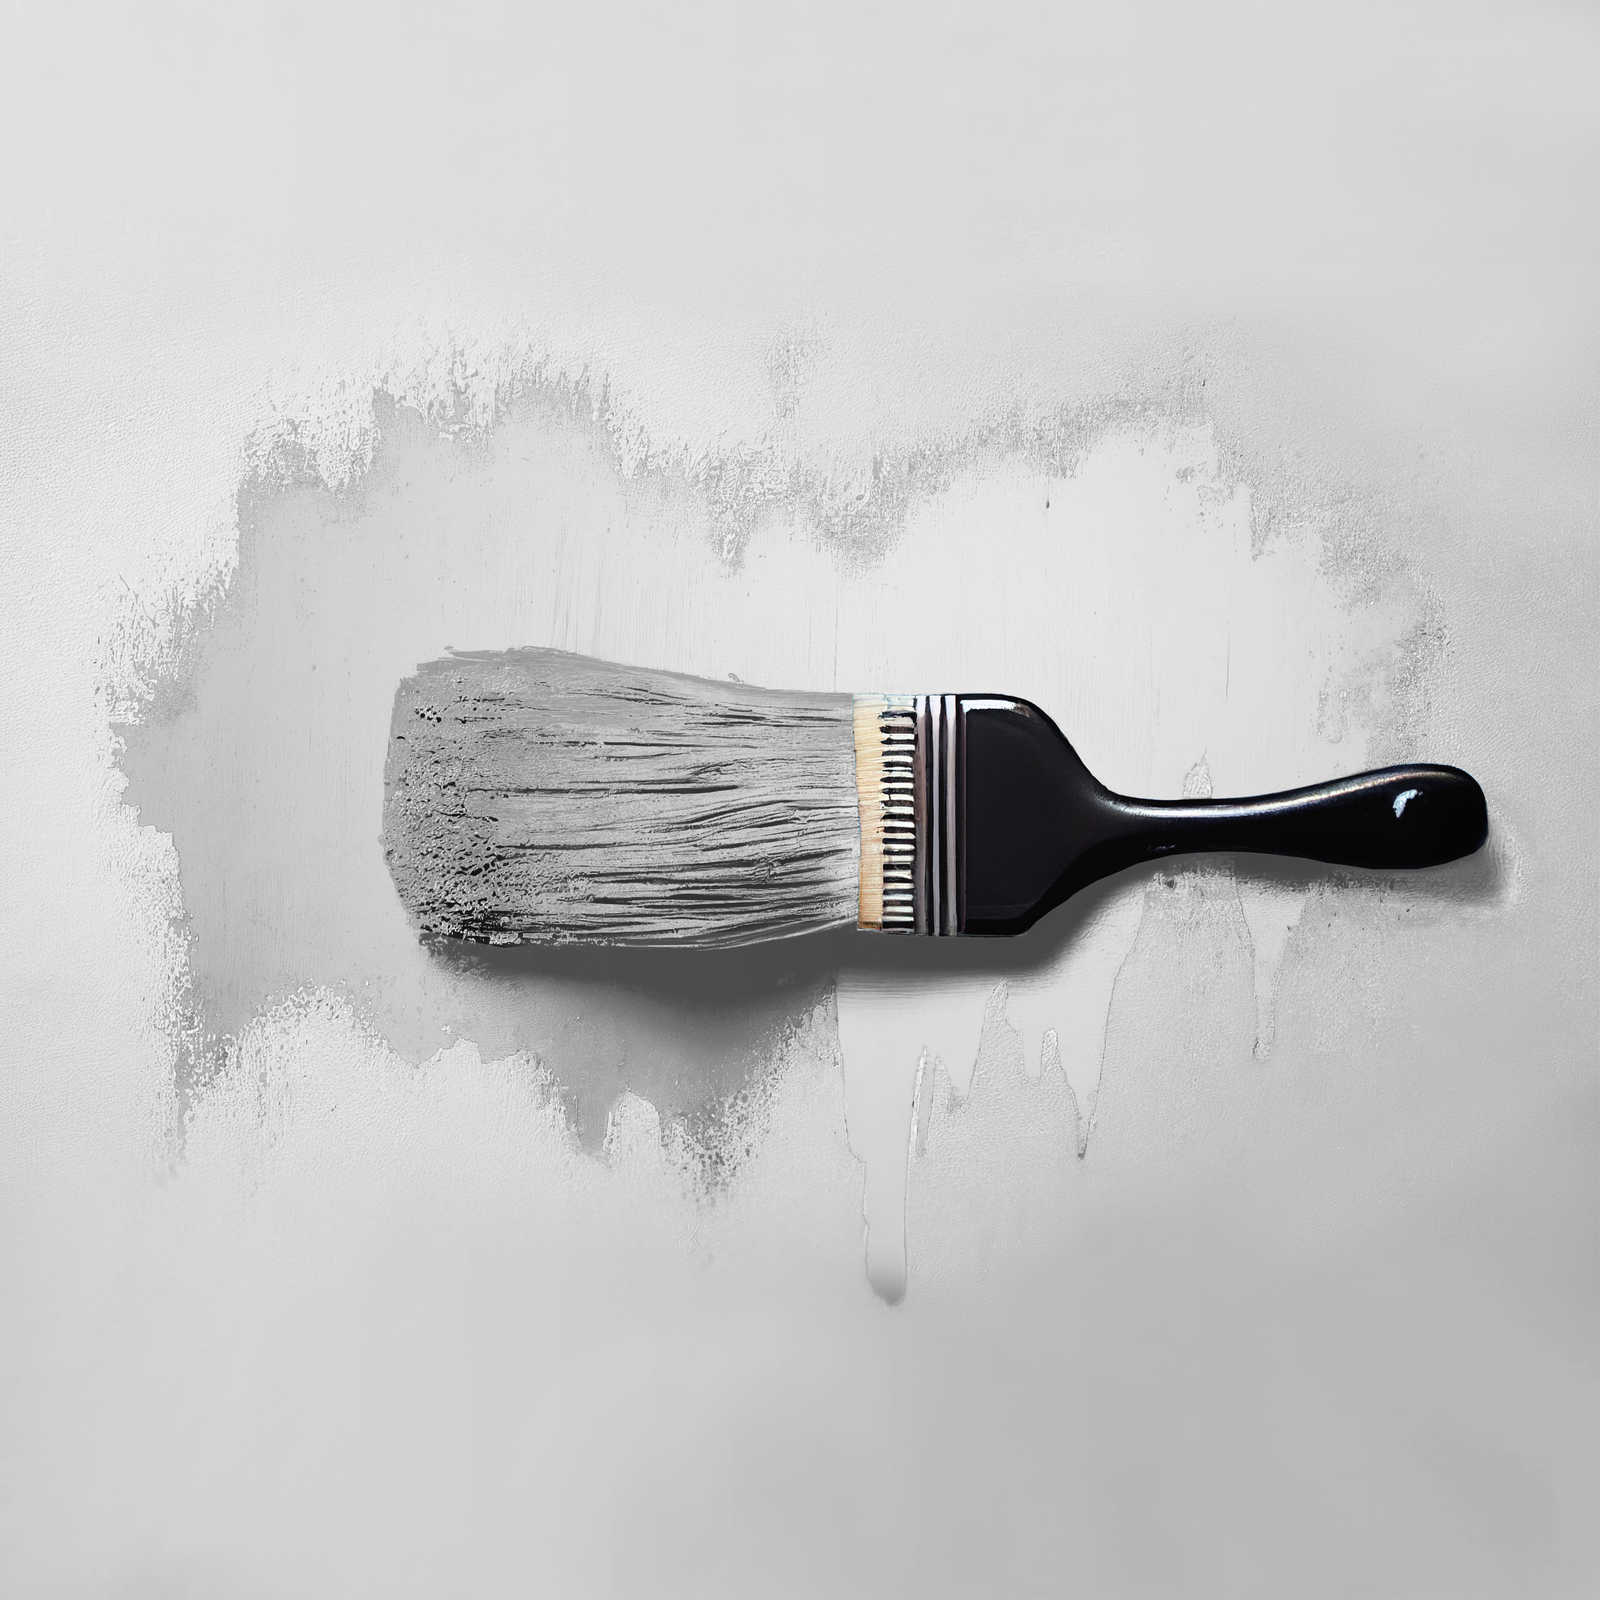             Pittura murale TCK1002 »Asian Noodles« in grigio chiaro armonizzante – 5,0 litri
        